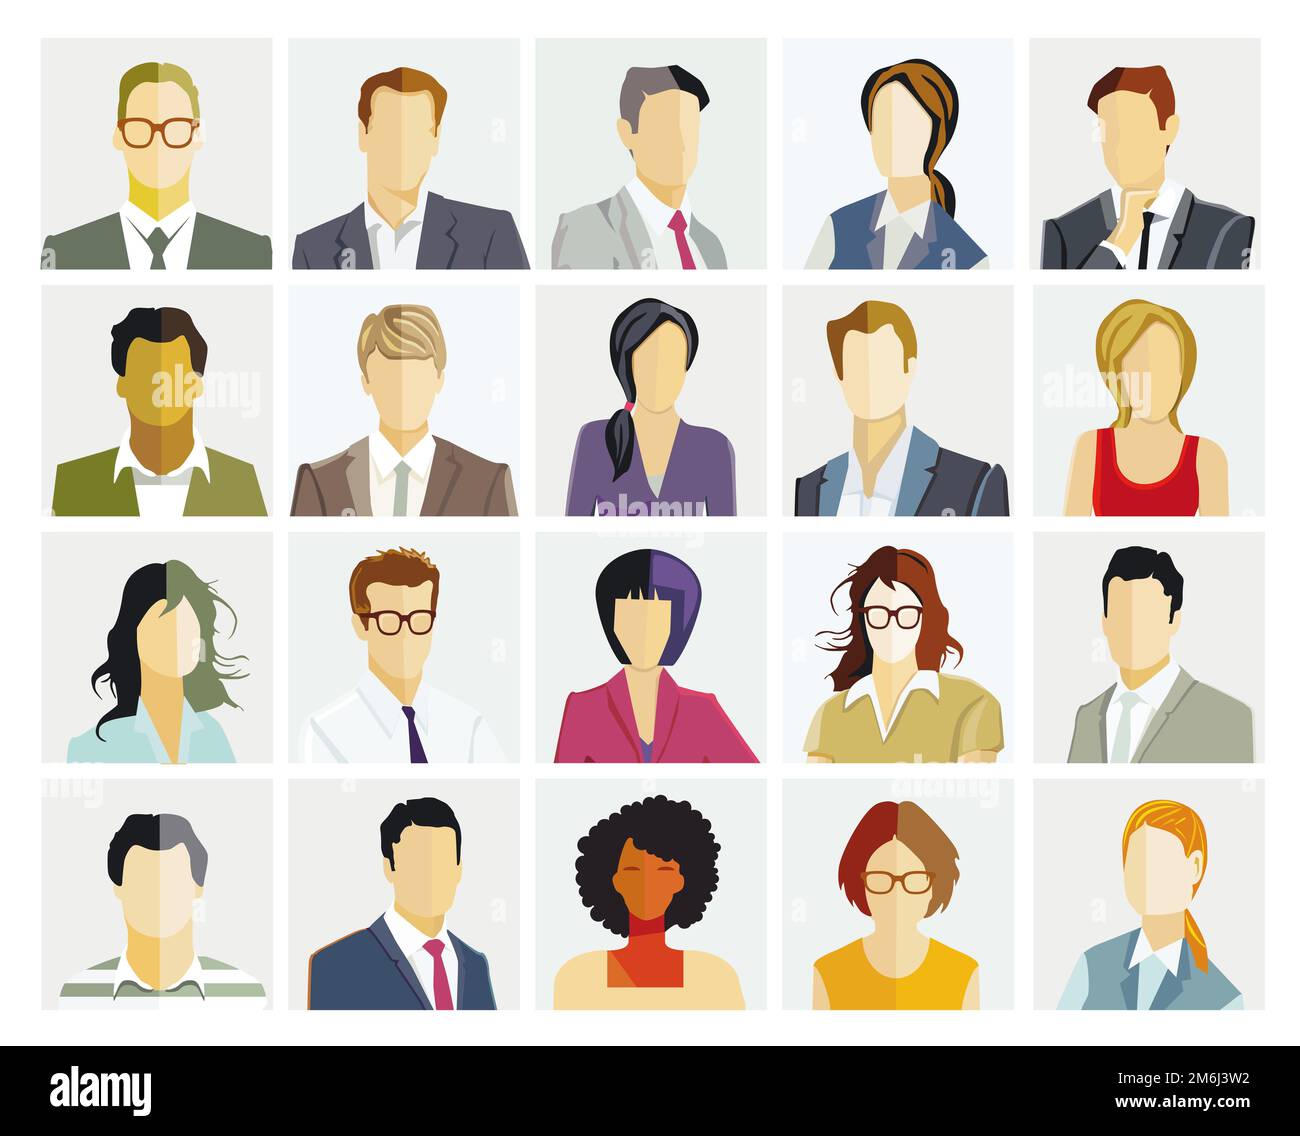 Portrait de groupe de personnes, visages sur fond blanc. Illustration Banque D'Images